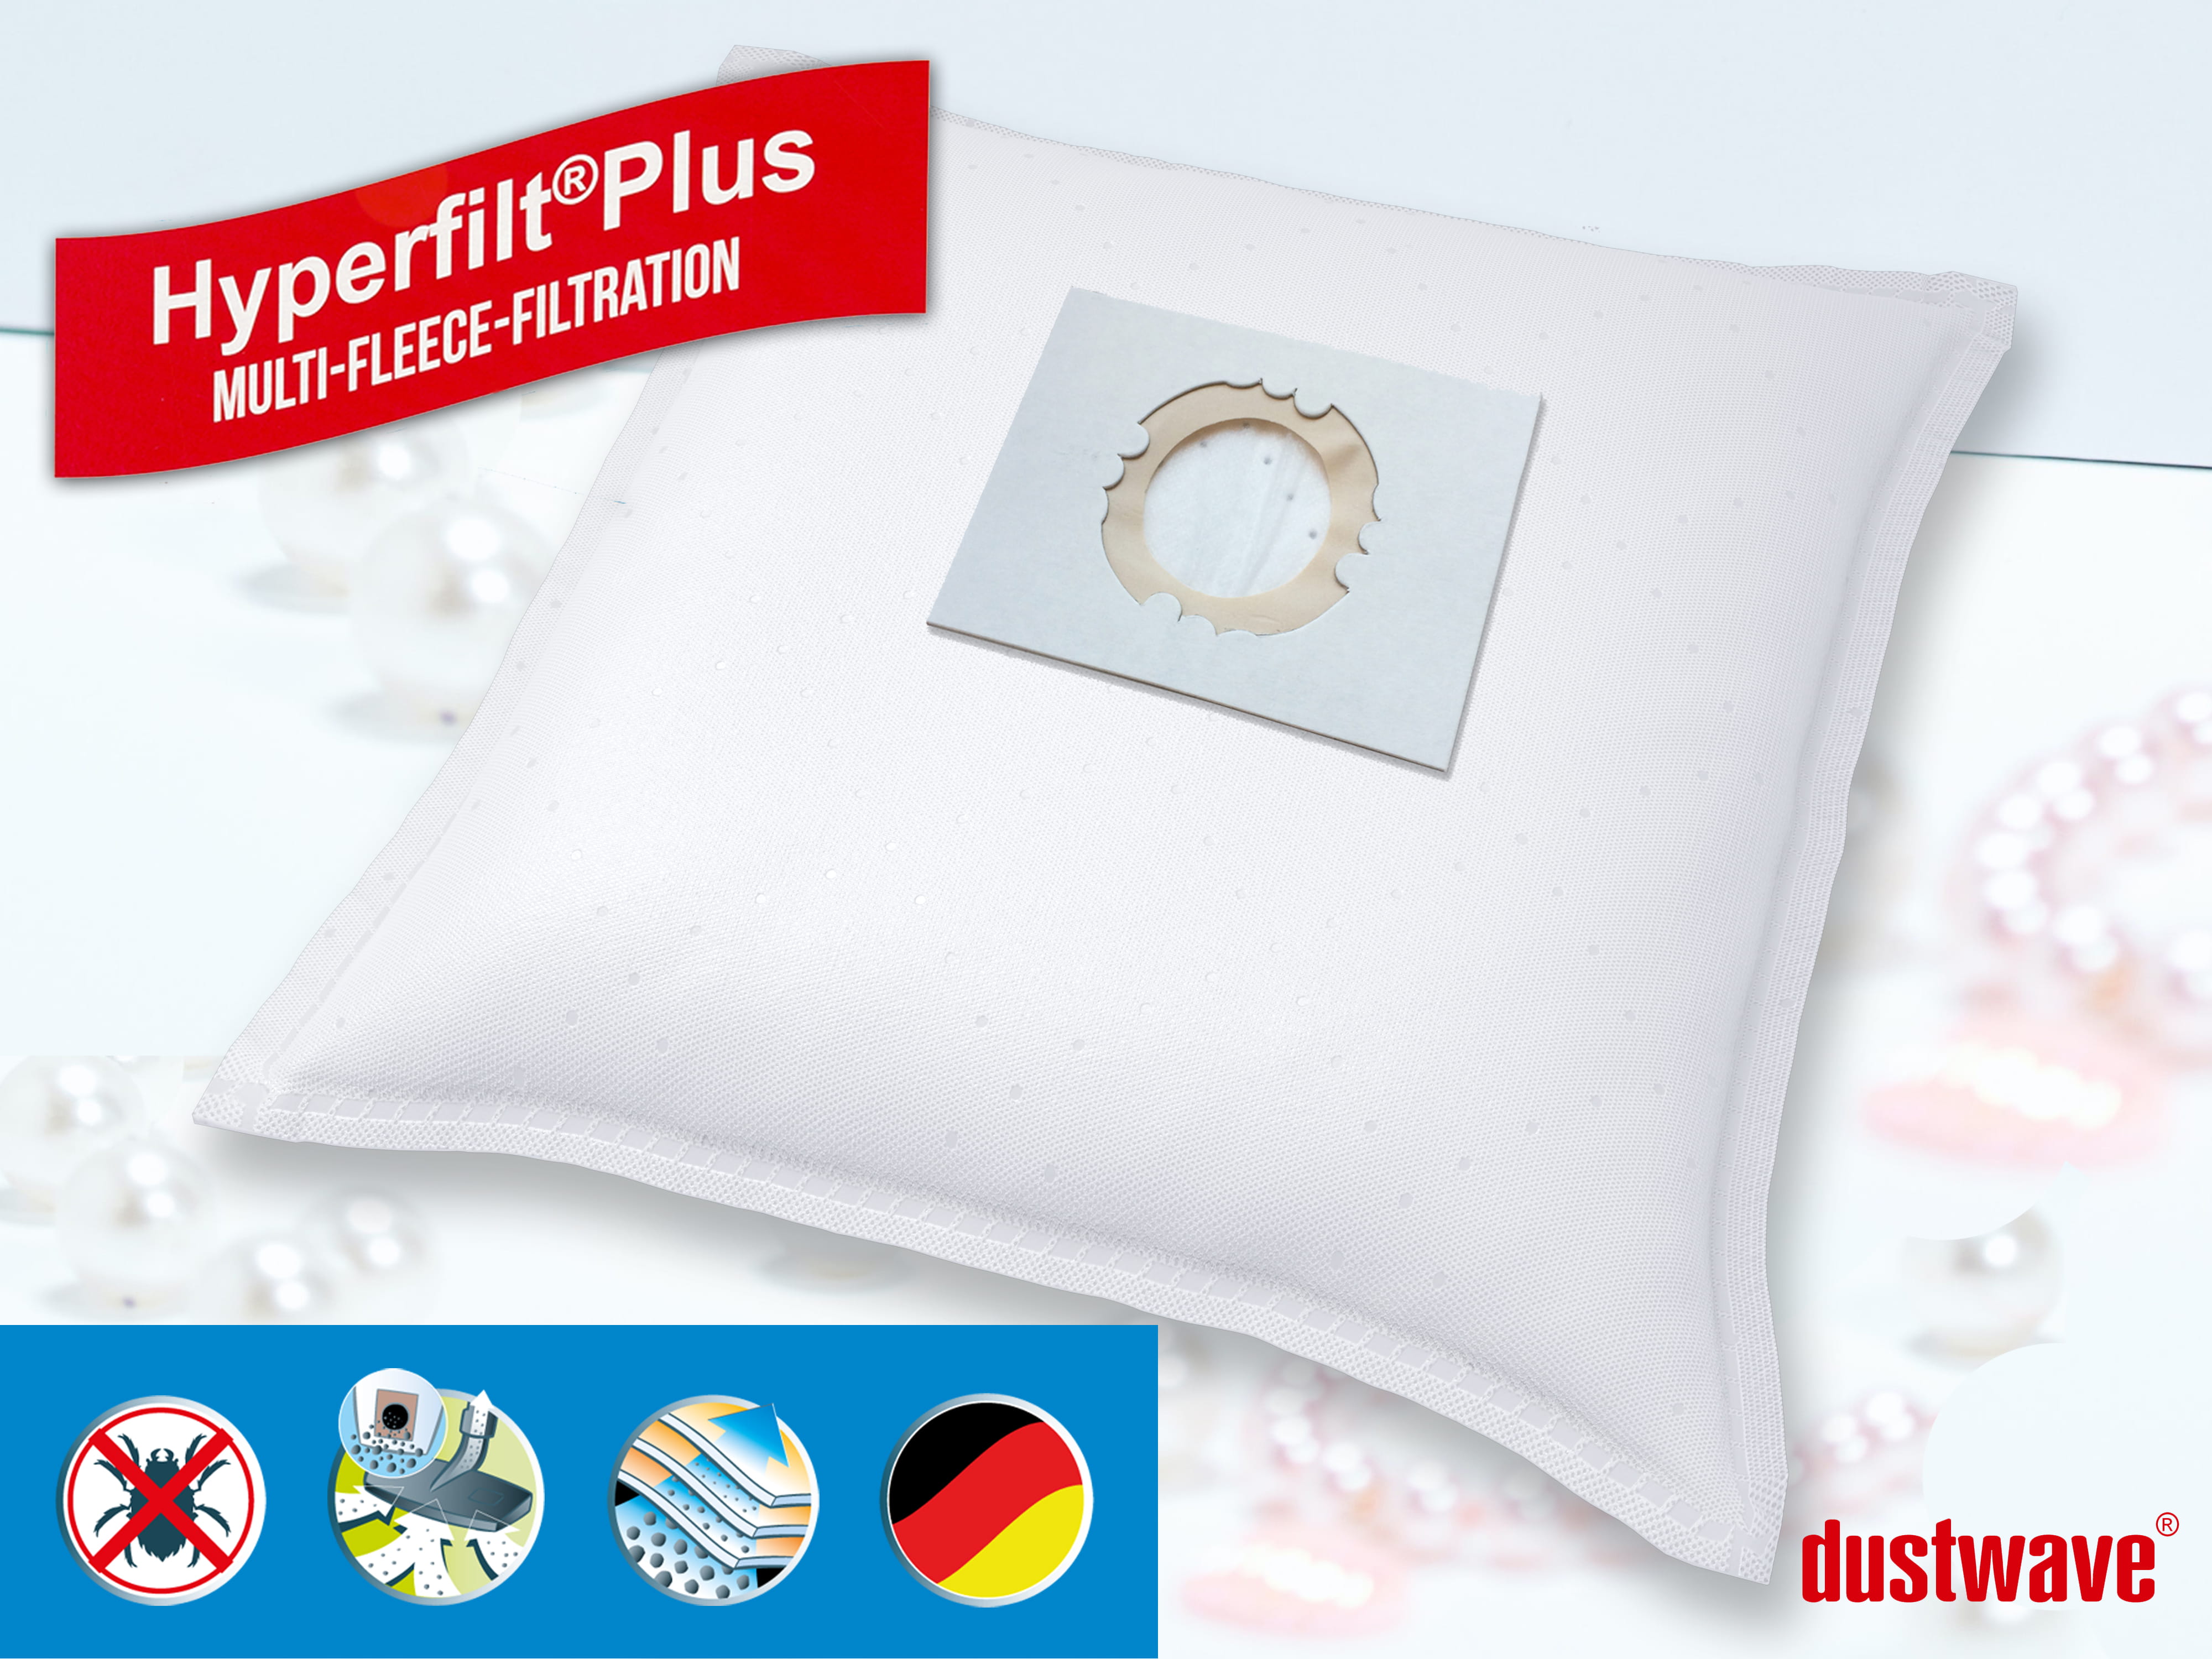 Dustwave® 10 Staubsaugerbeutel für Hoover BD SX2056 001 - hocheffizient, mehrlagiges Mikrovlies mit Hygieneverschluss - Made in Germany